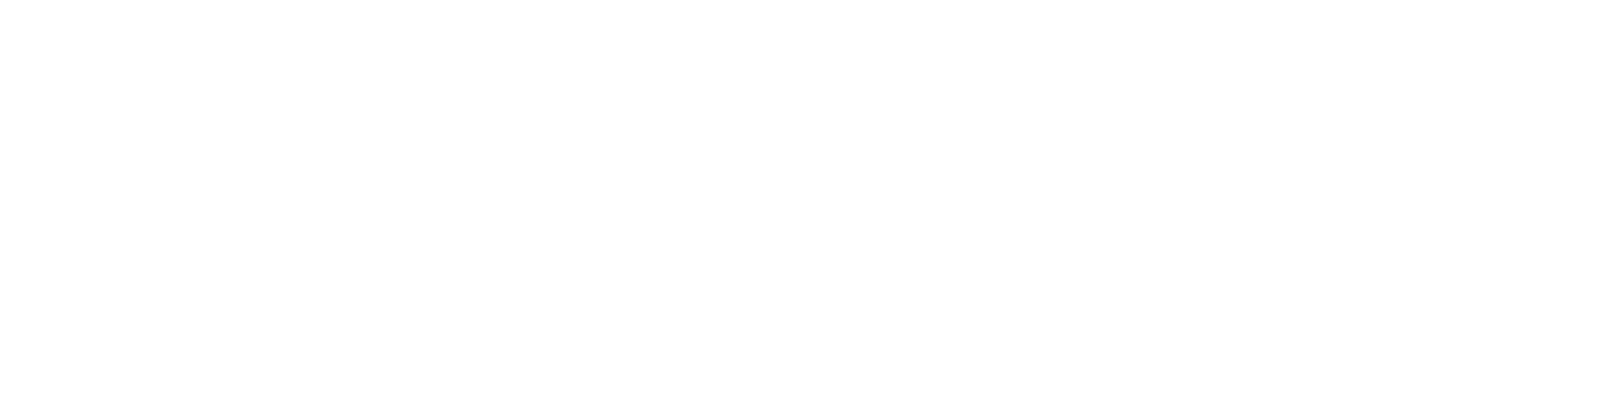 logo technovation